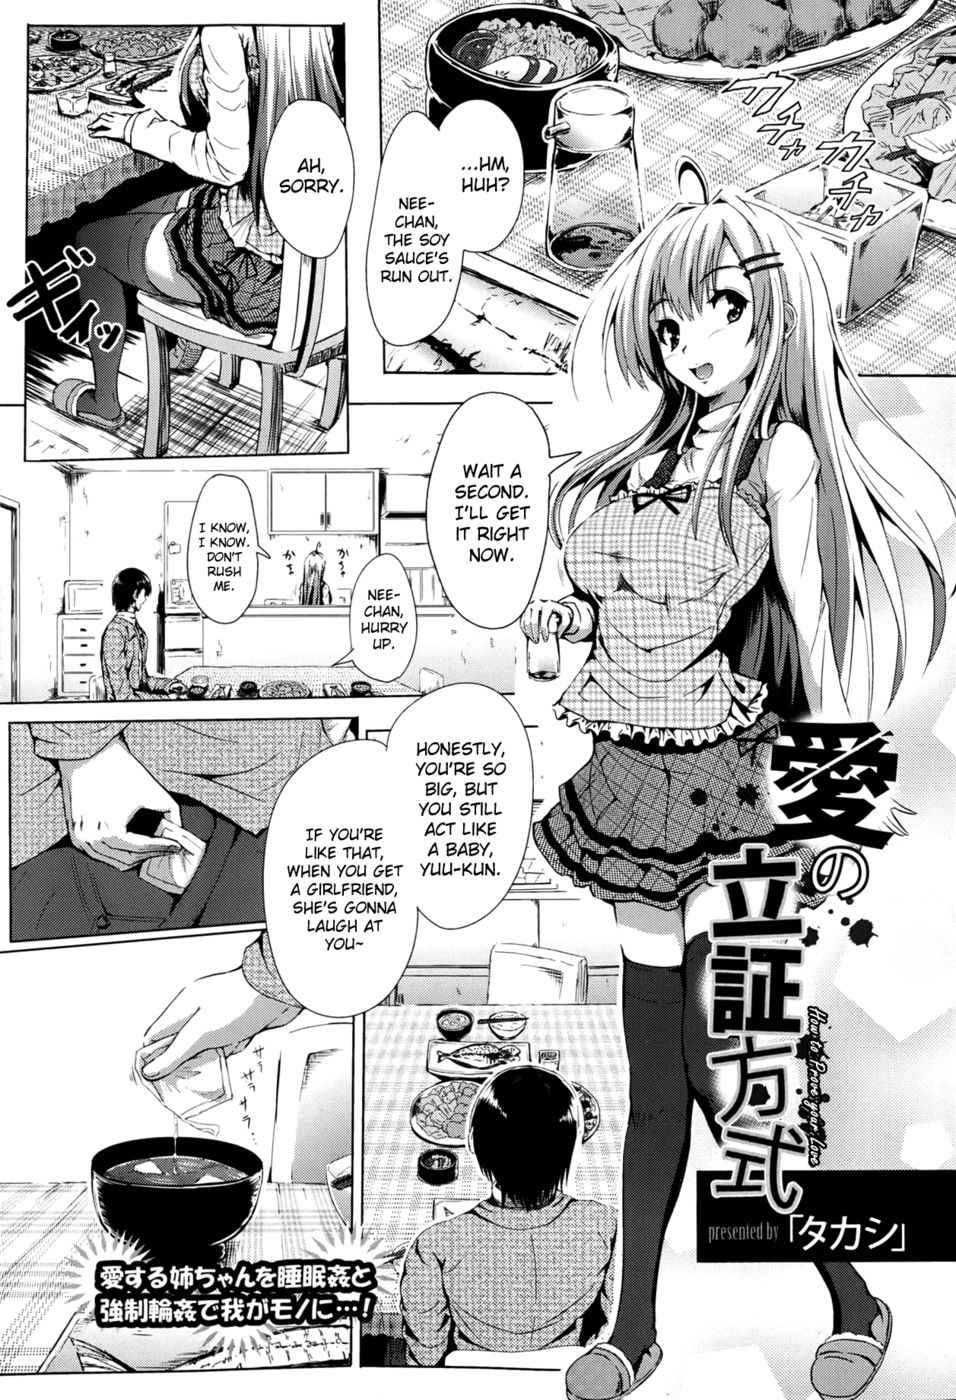 Hentai Manga Comic-How to Prove Your Love-Read-1